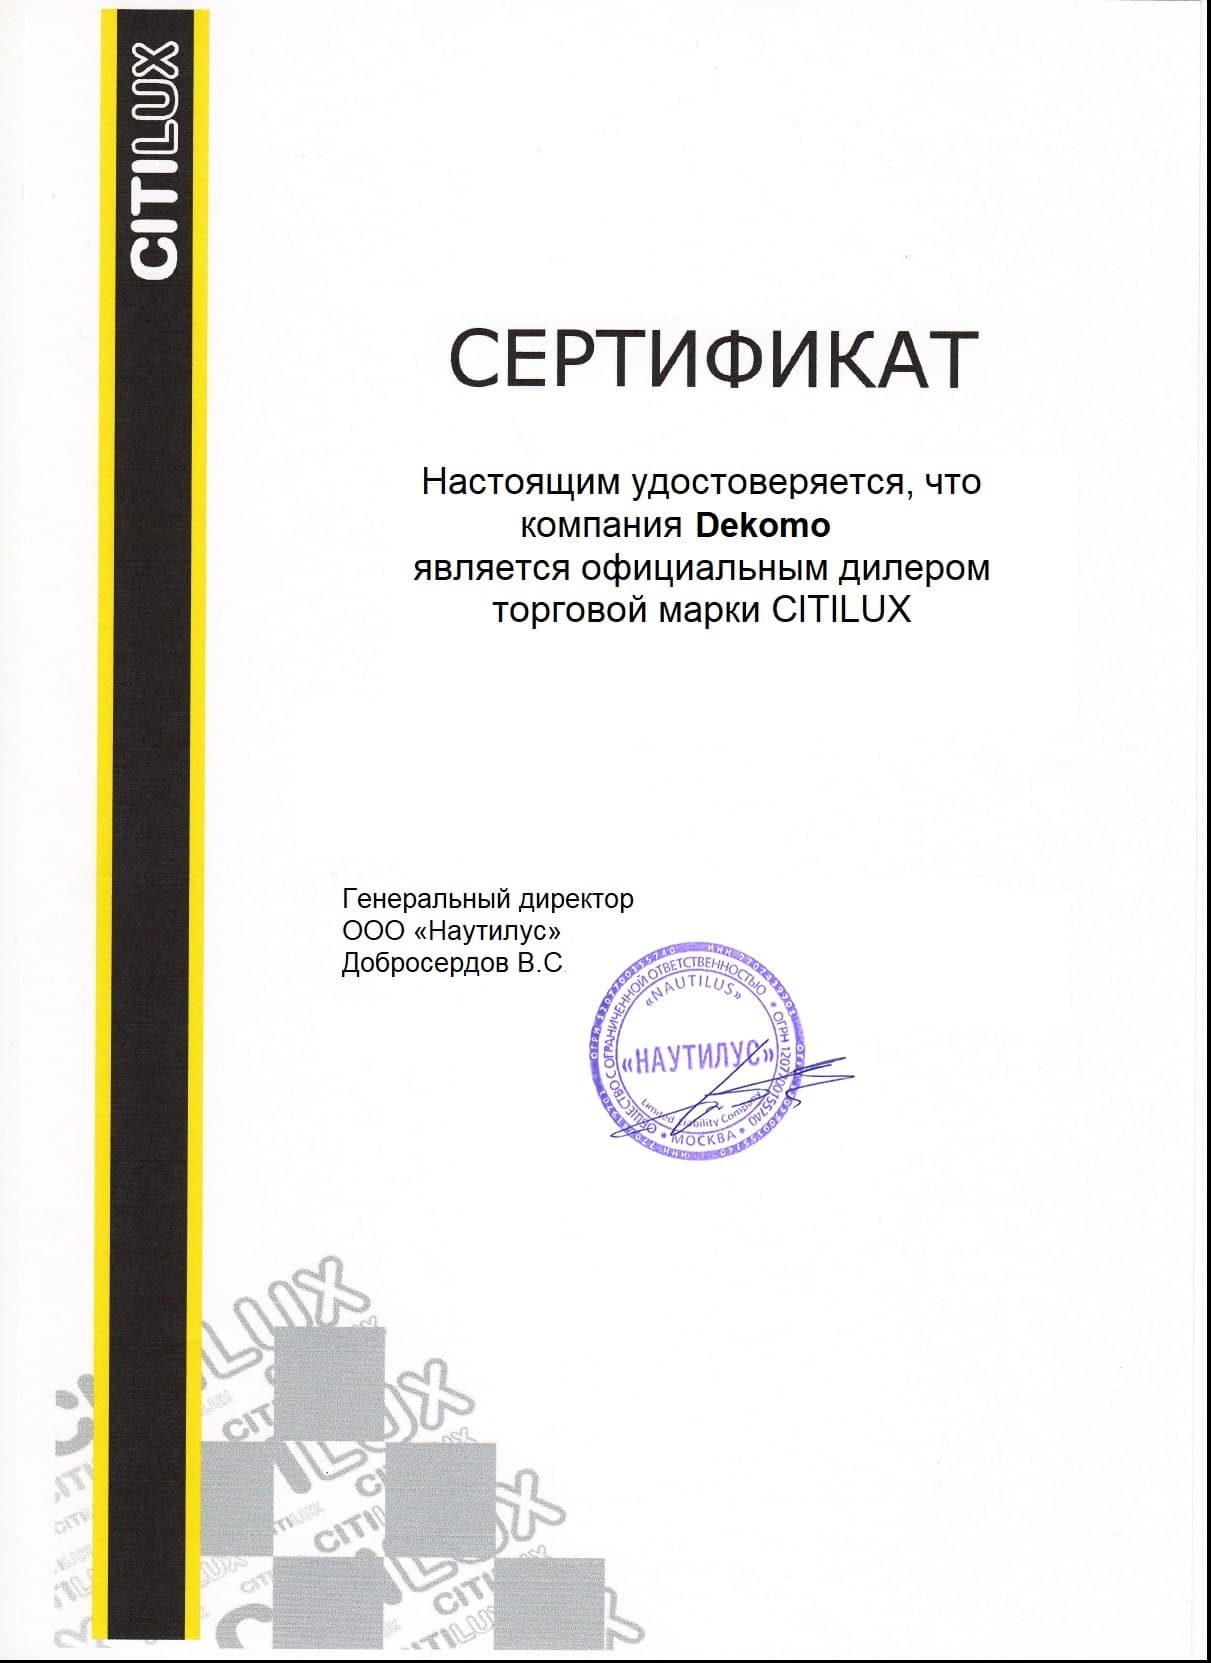 Сертификат CITILUX